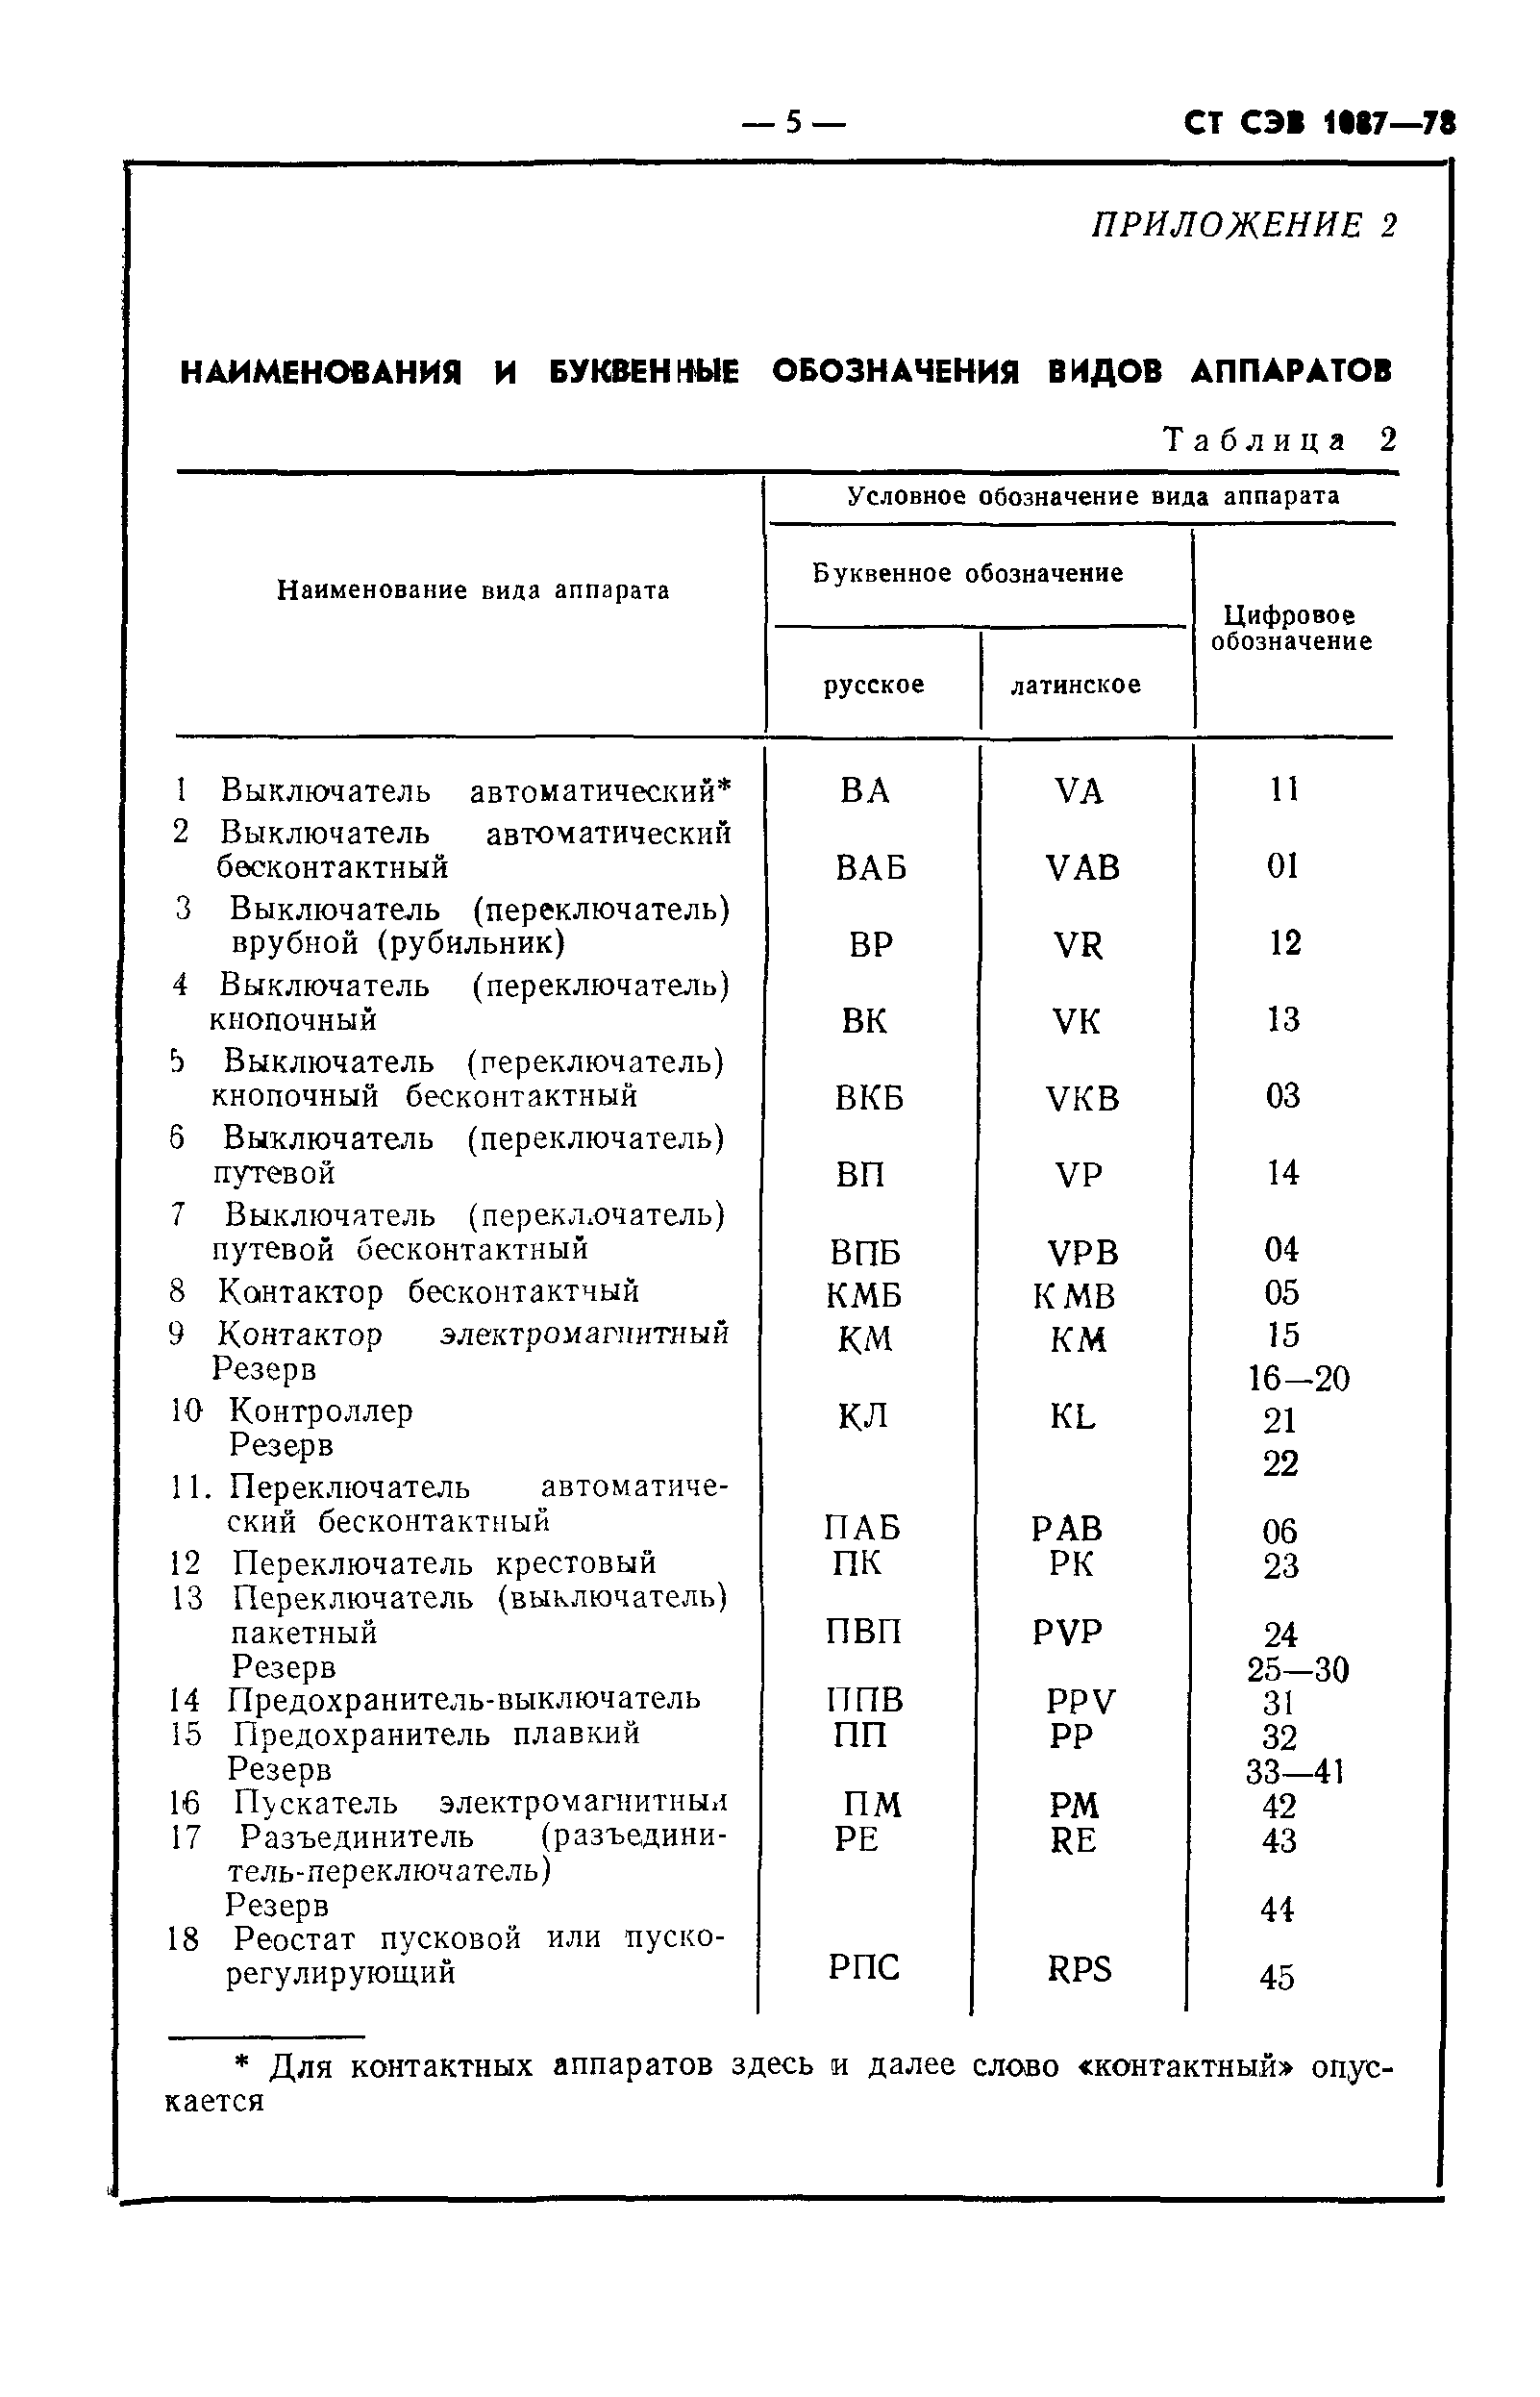 СТ СЭВ 1087-78